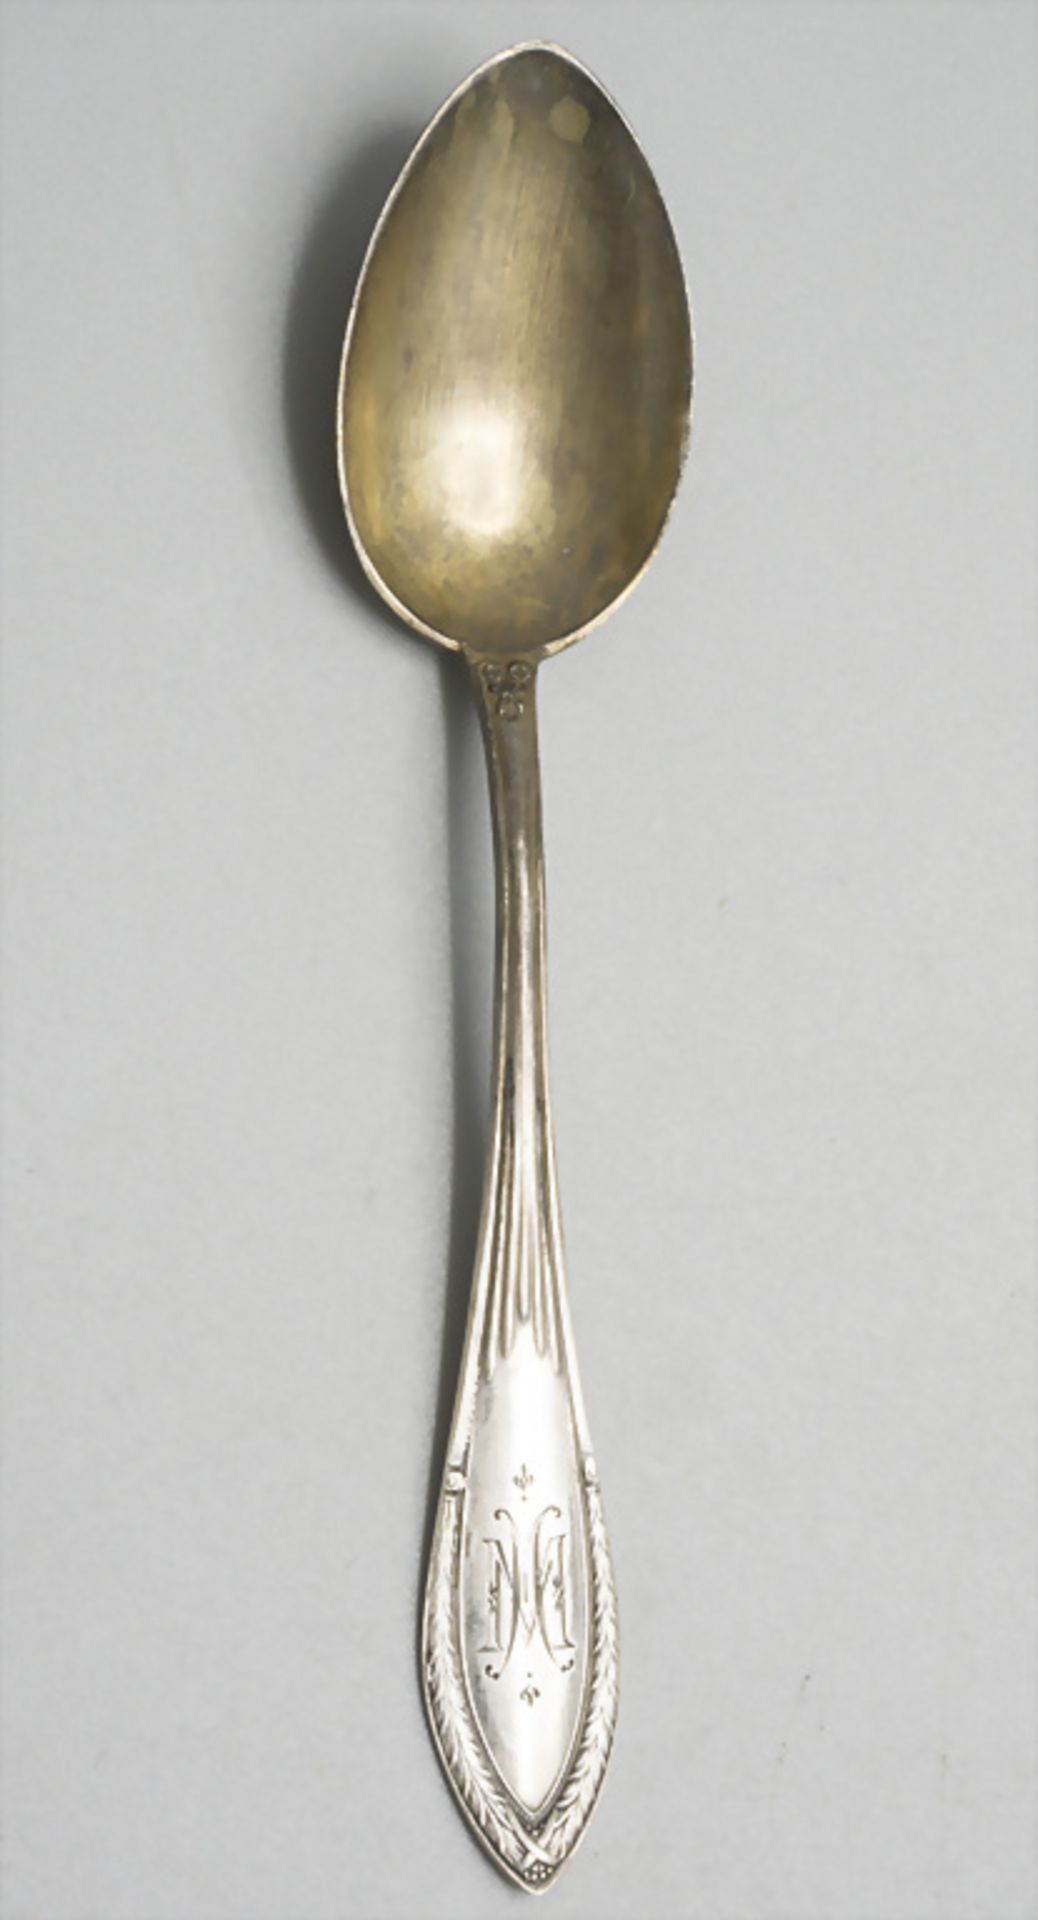 12 Löffel / 12 cuillères en argent massif / A set of 12 silver spoons, Franz Bahner, ... - Image 2 of 5